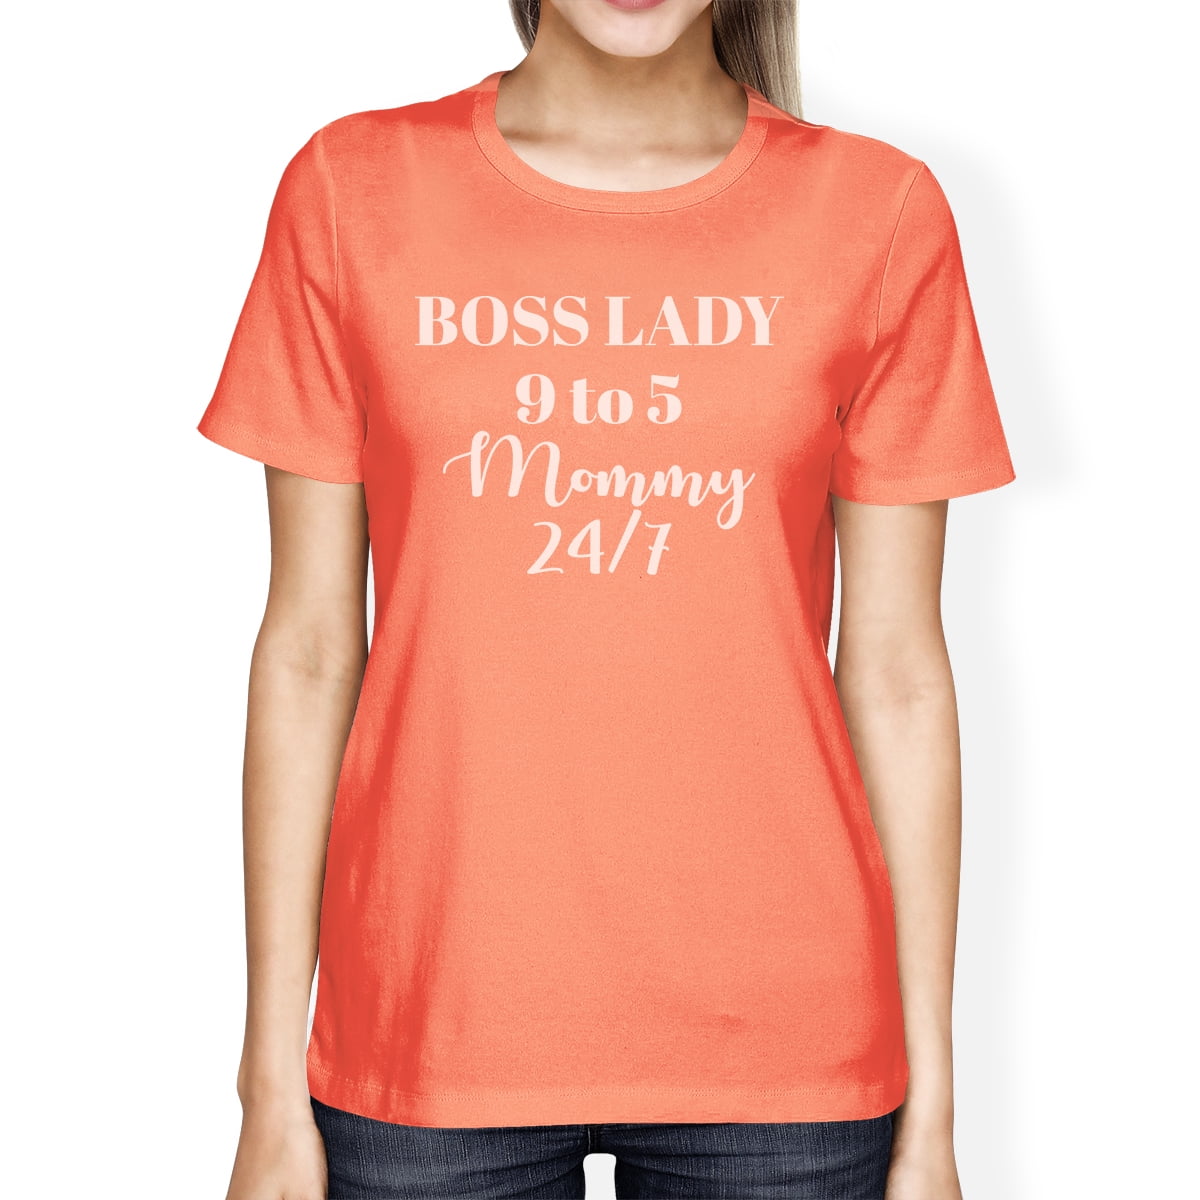 express boss lady shirt